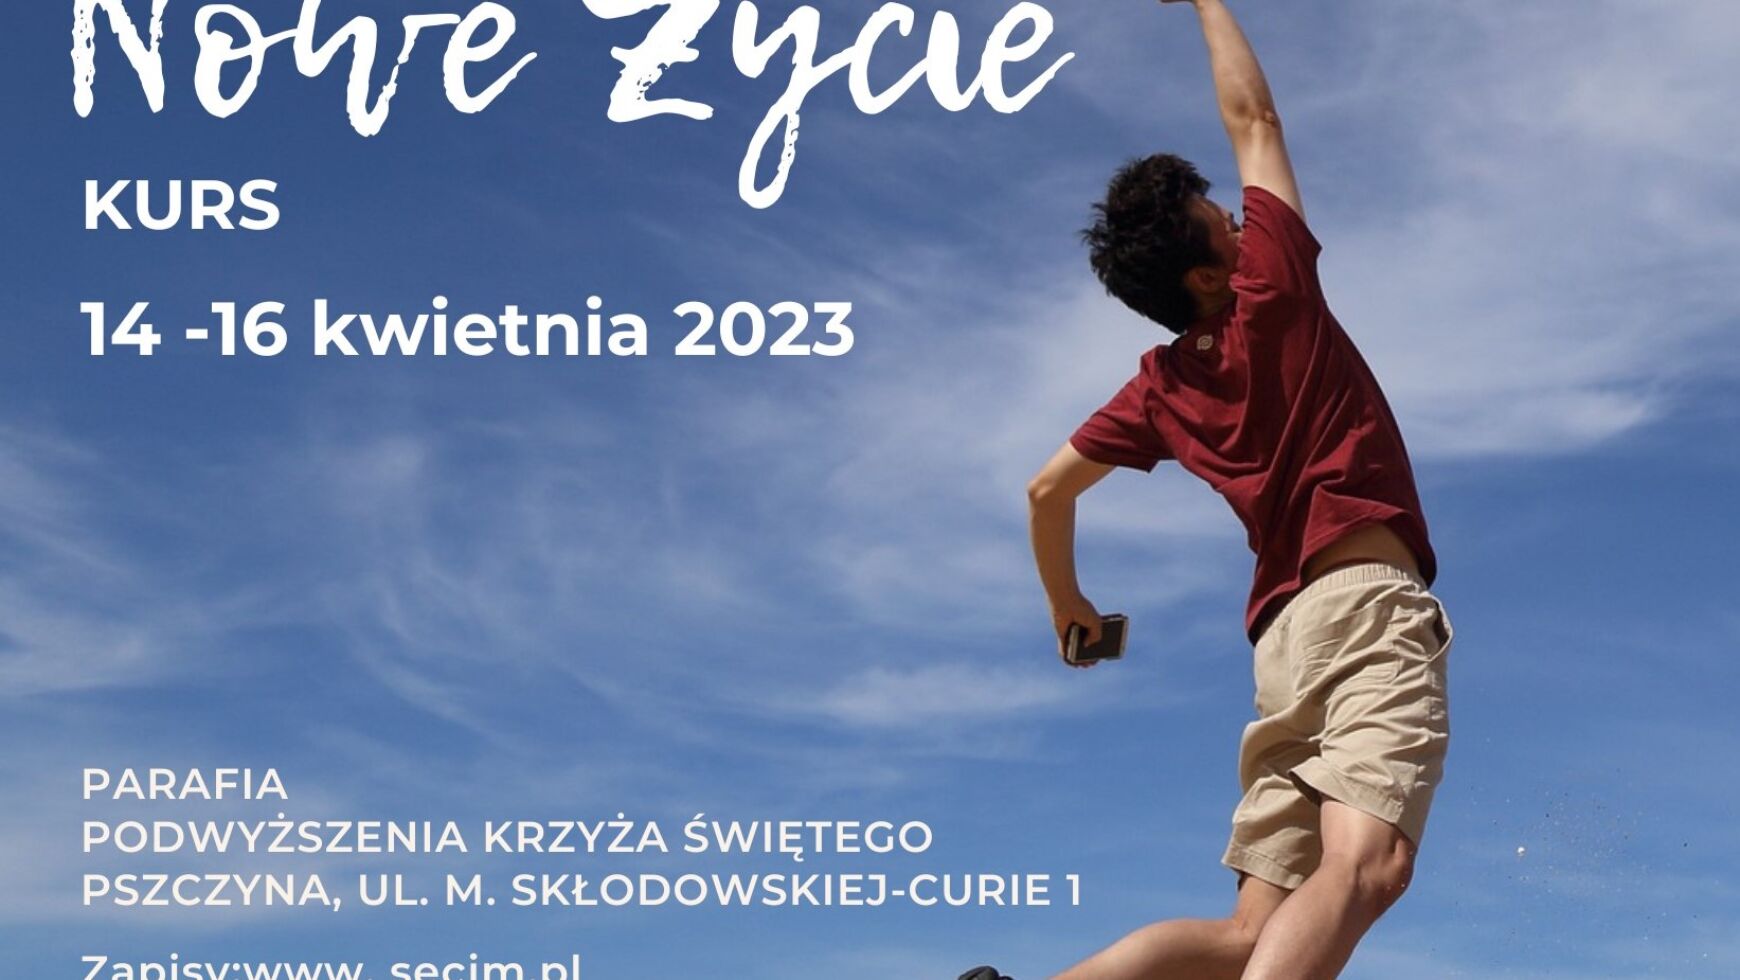 Kurs Nowe Życie, Pszczyna 14-16.04.2023